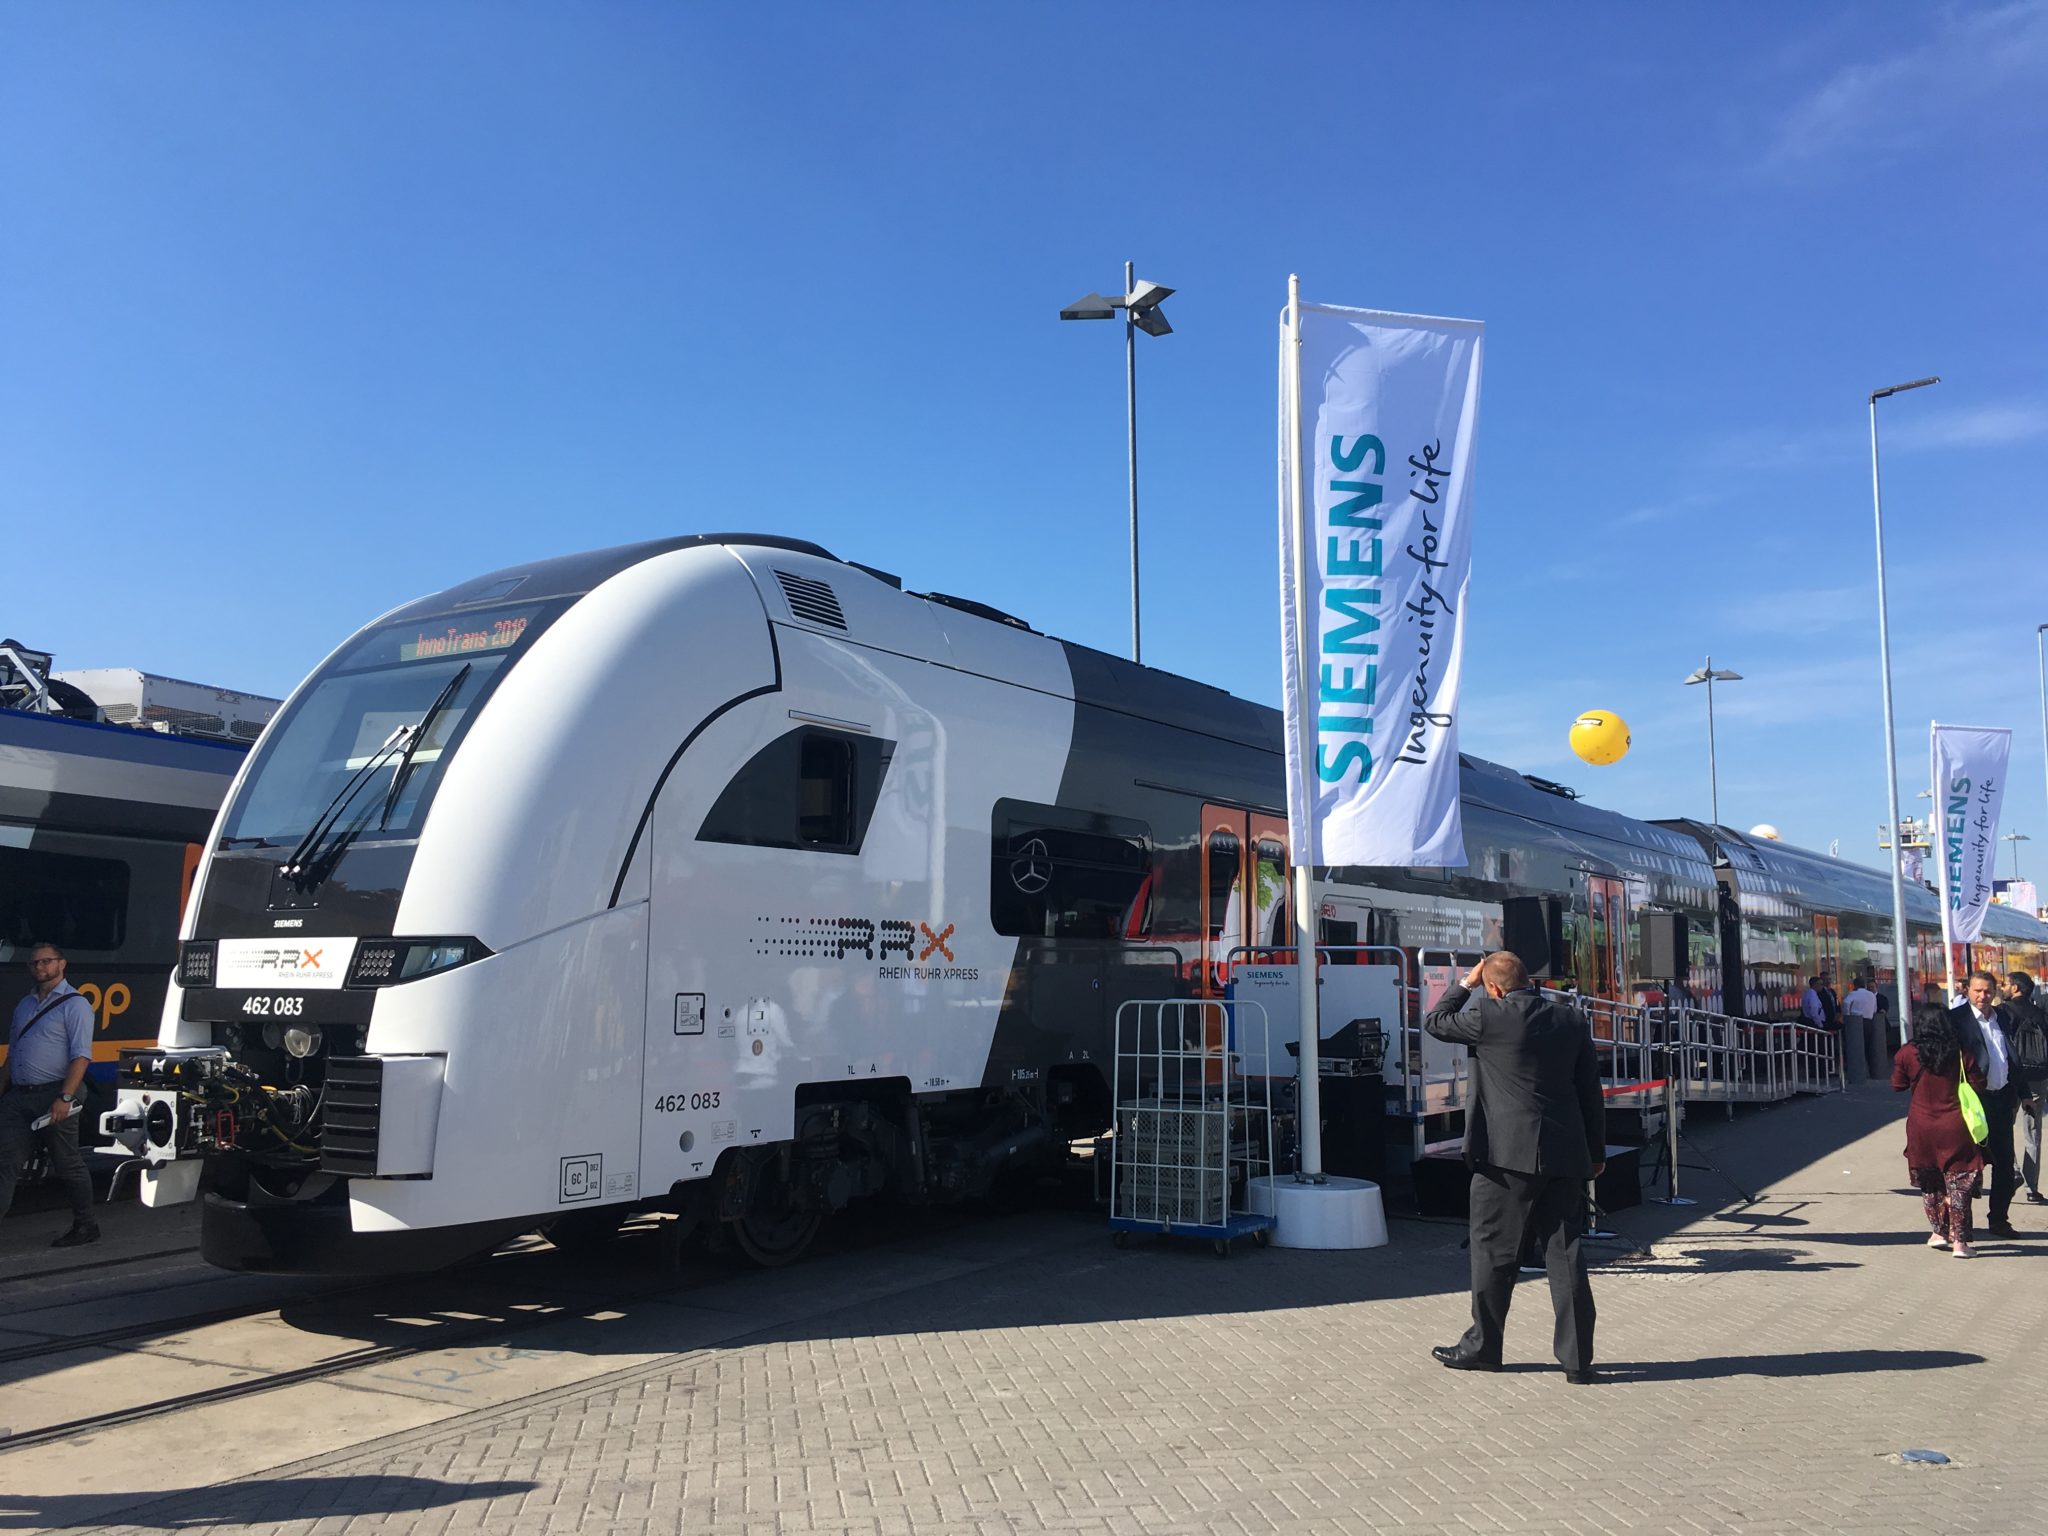 The RRX train, a Siemens Desiro HC, at InnoTrans 2018